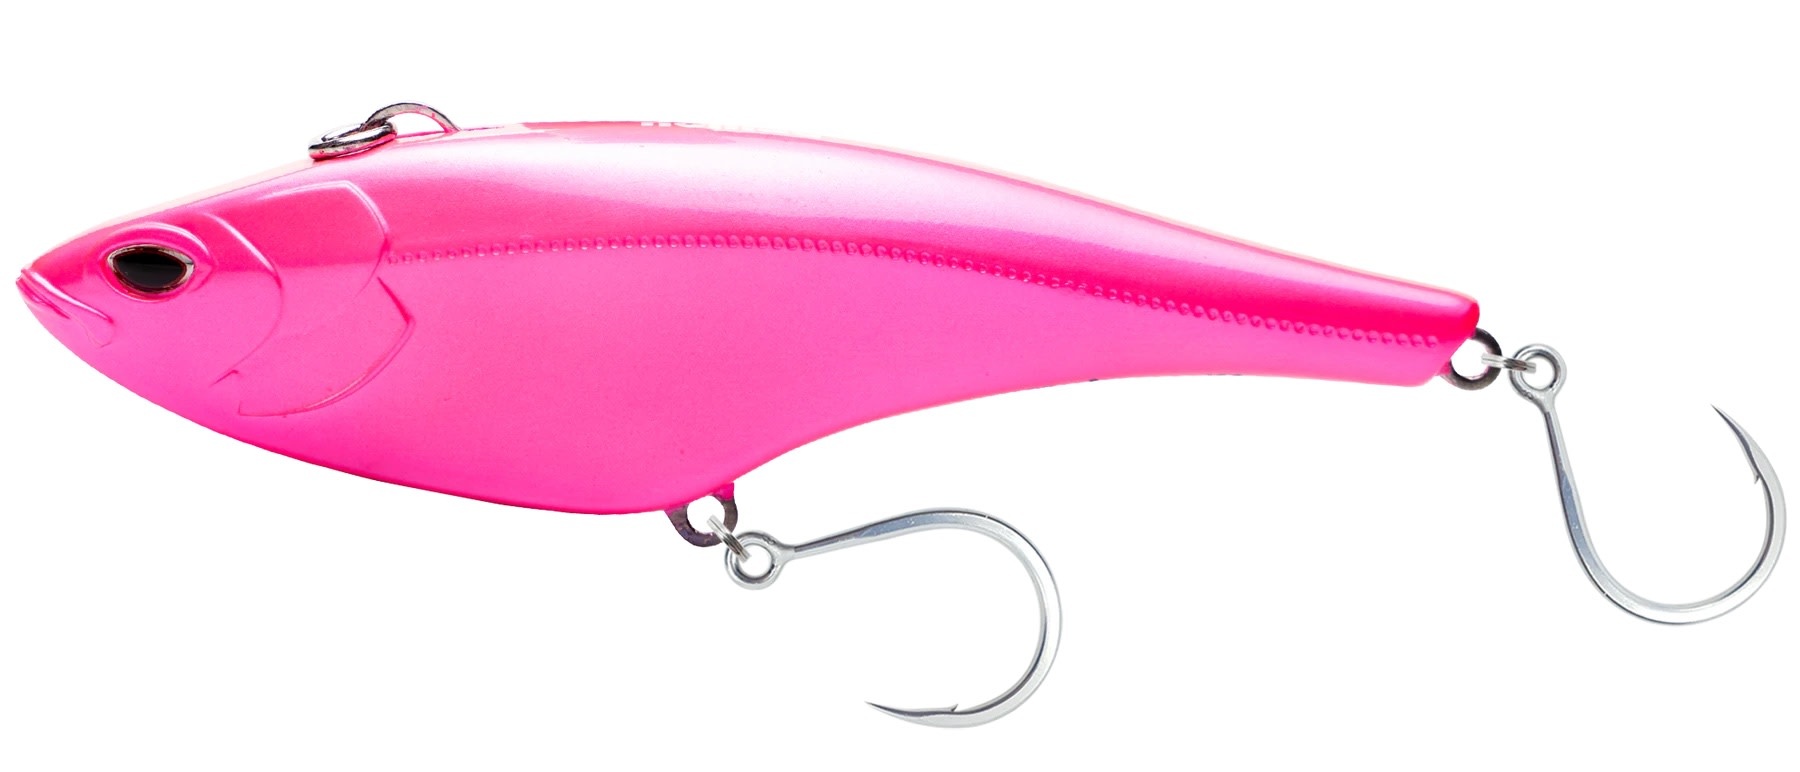 Nomad Madmacs 200 Hot Pink - Angler's Choice Tackle